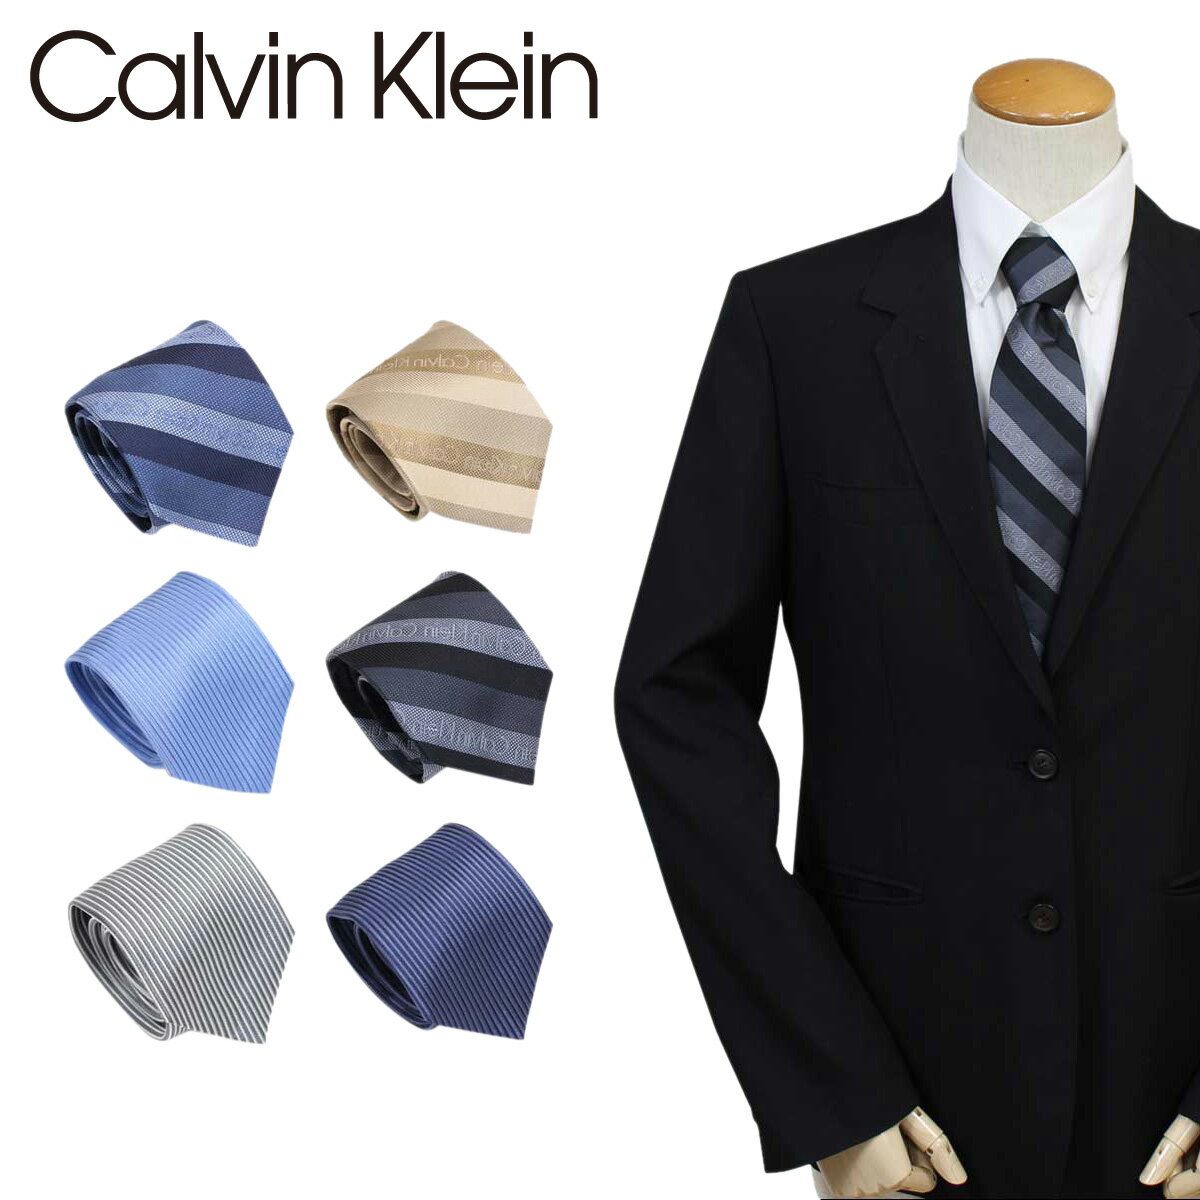 【 最大1000円OFFクーポン配布中 】 カルバンクライン Calvin Klein ネクタイ シルク メンズ CK ビジネス 結婚式 ブランド